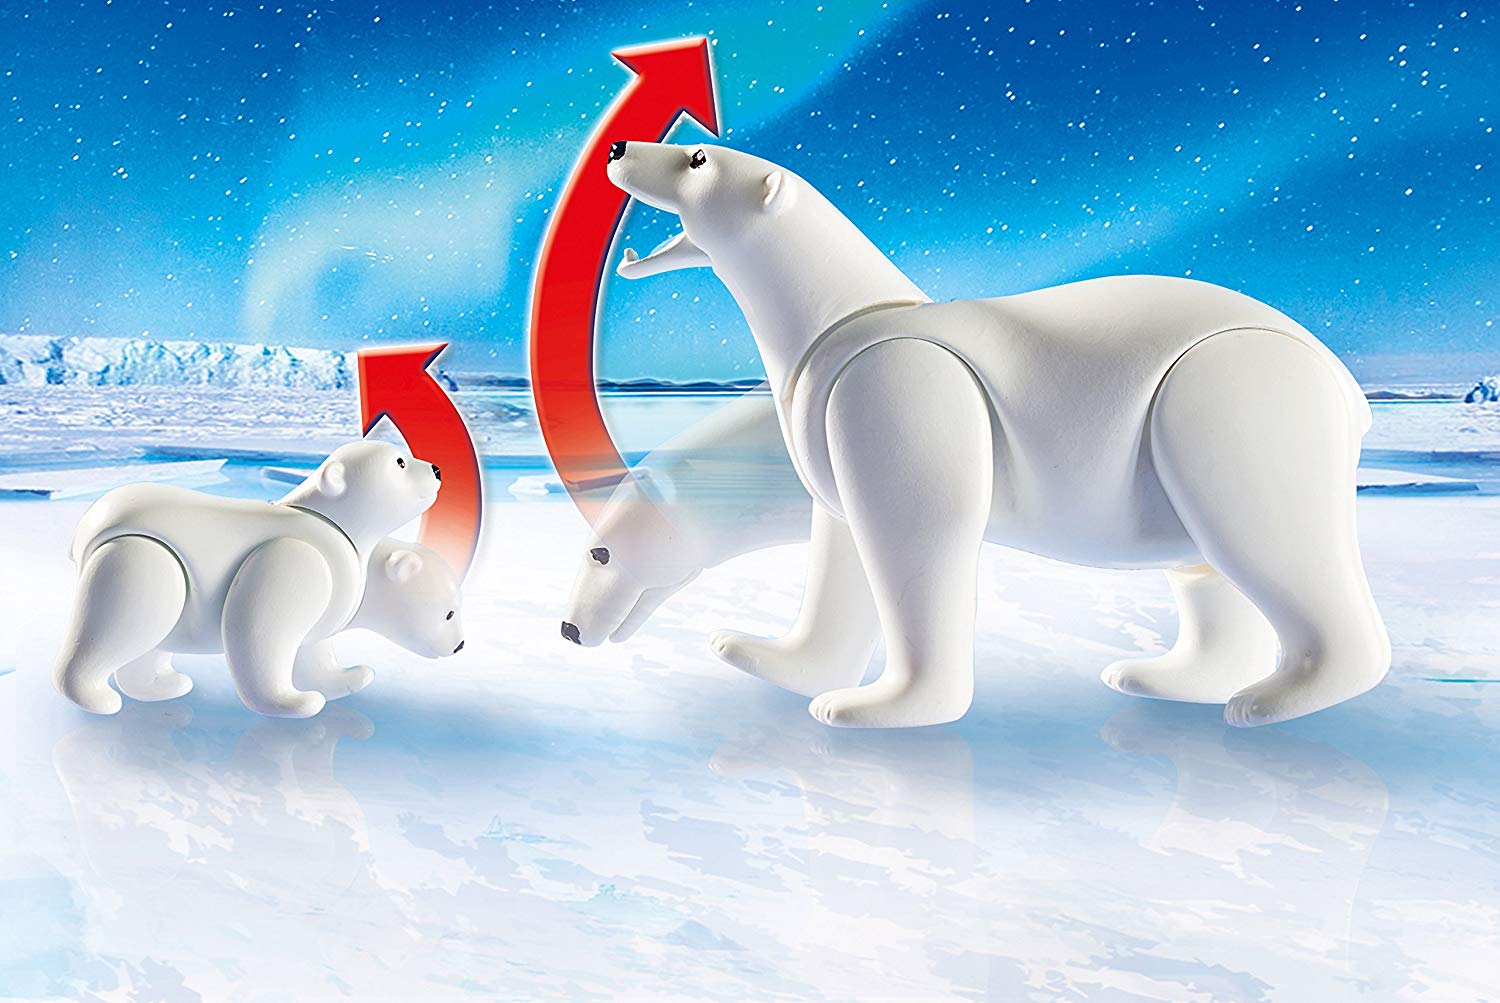 Игровой набор из серии Полярная экспедиция: Исследователи Арктики с полярными медведями  